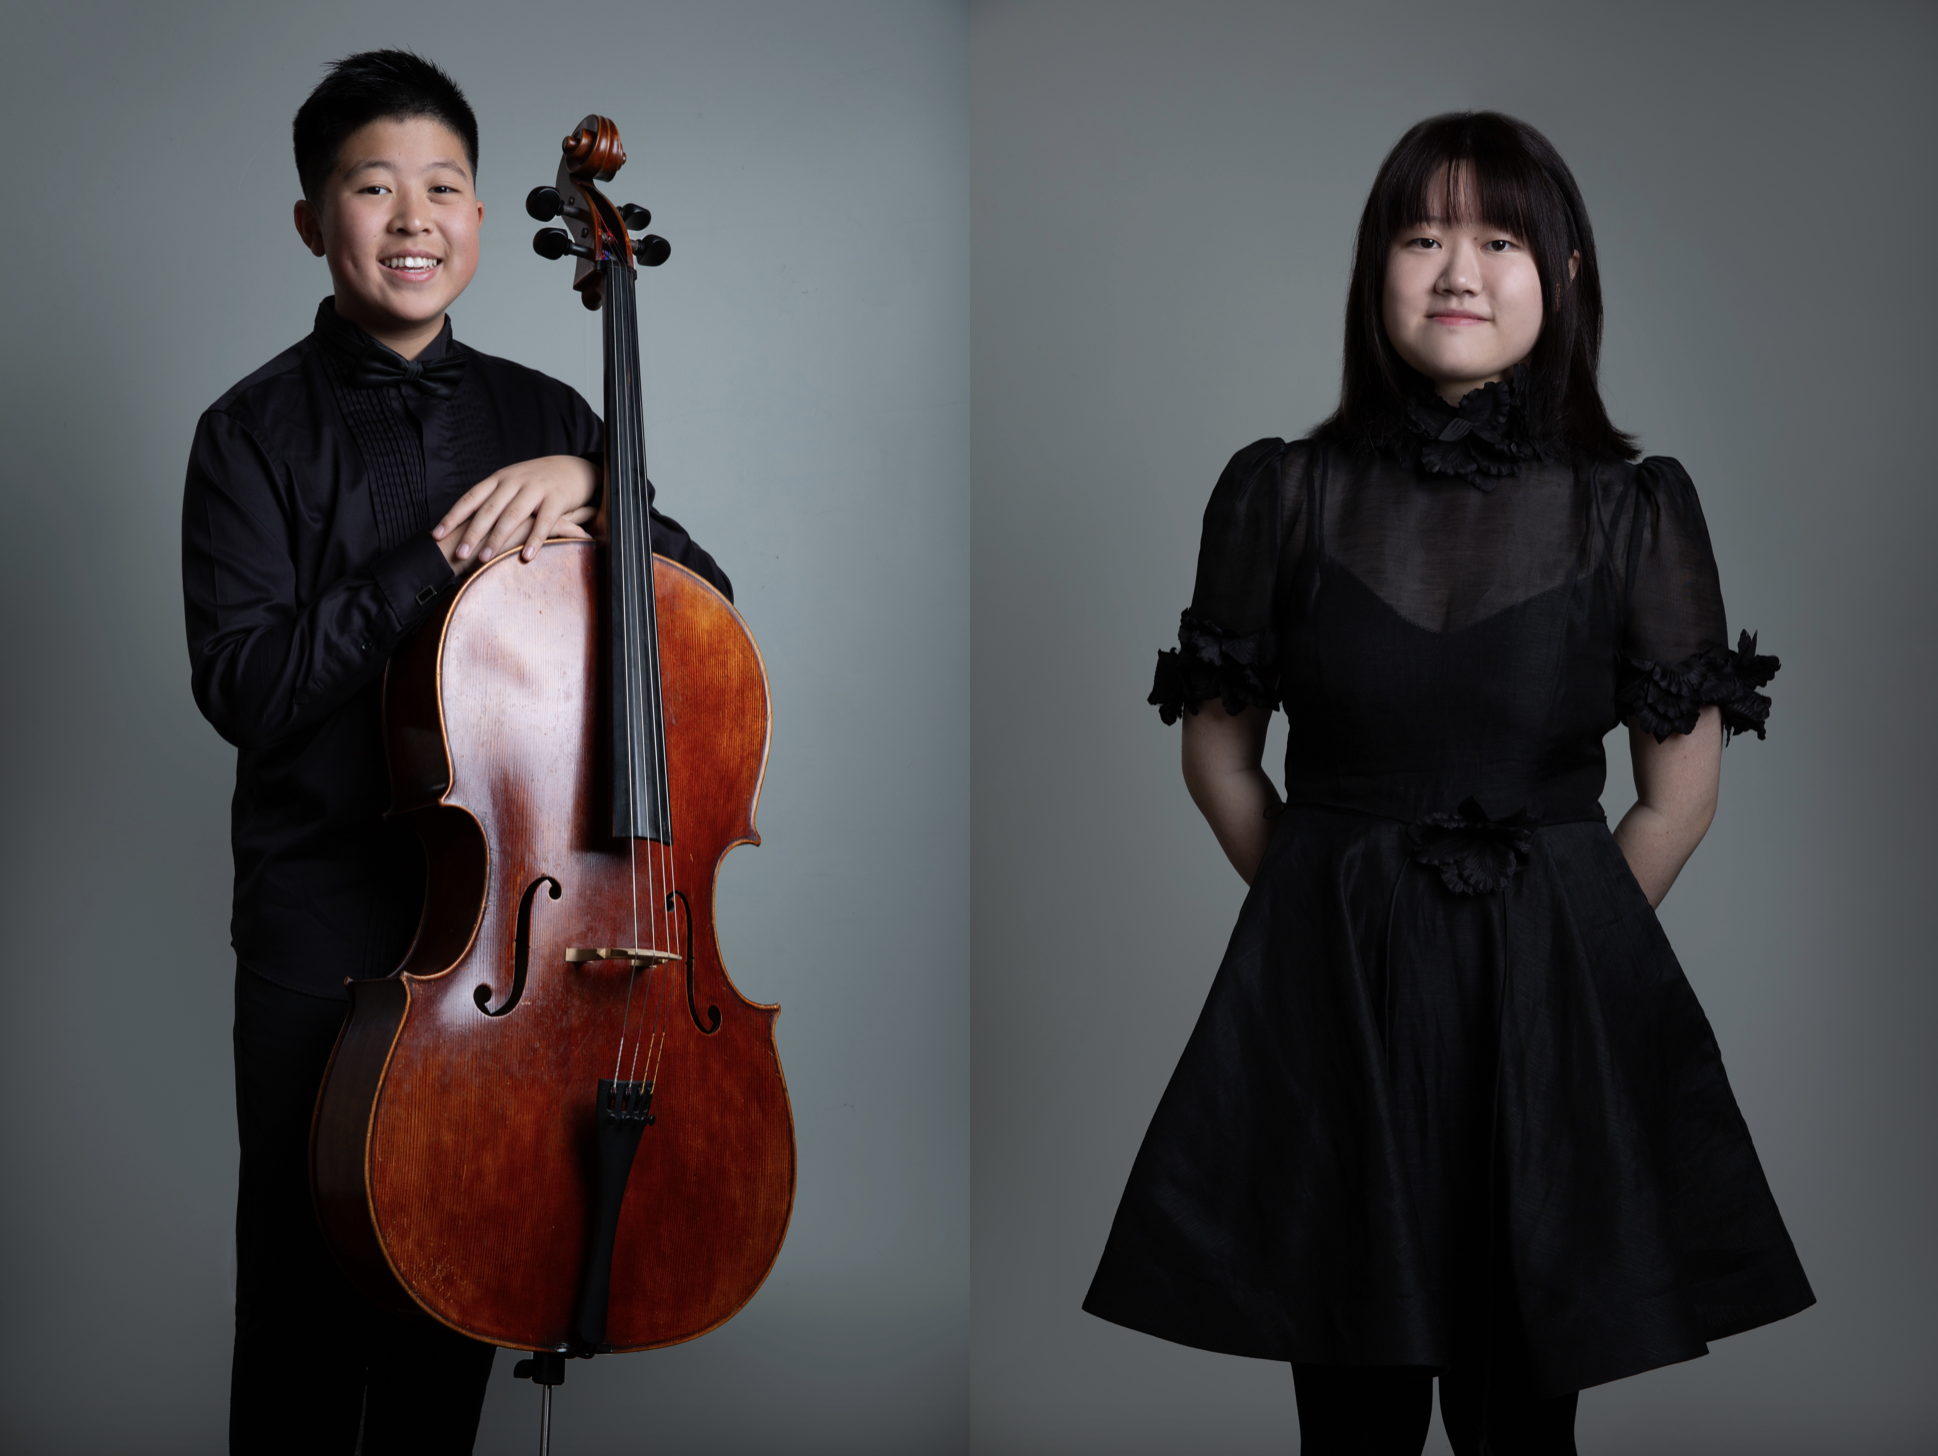 Cellist Gabriel Liu and pianist Kathy Ma